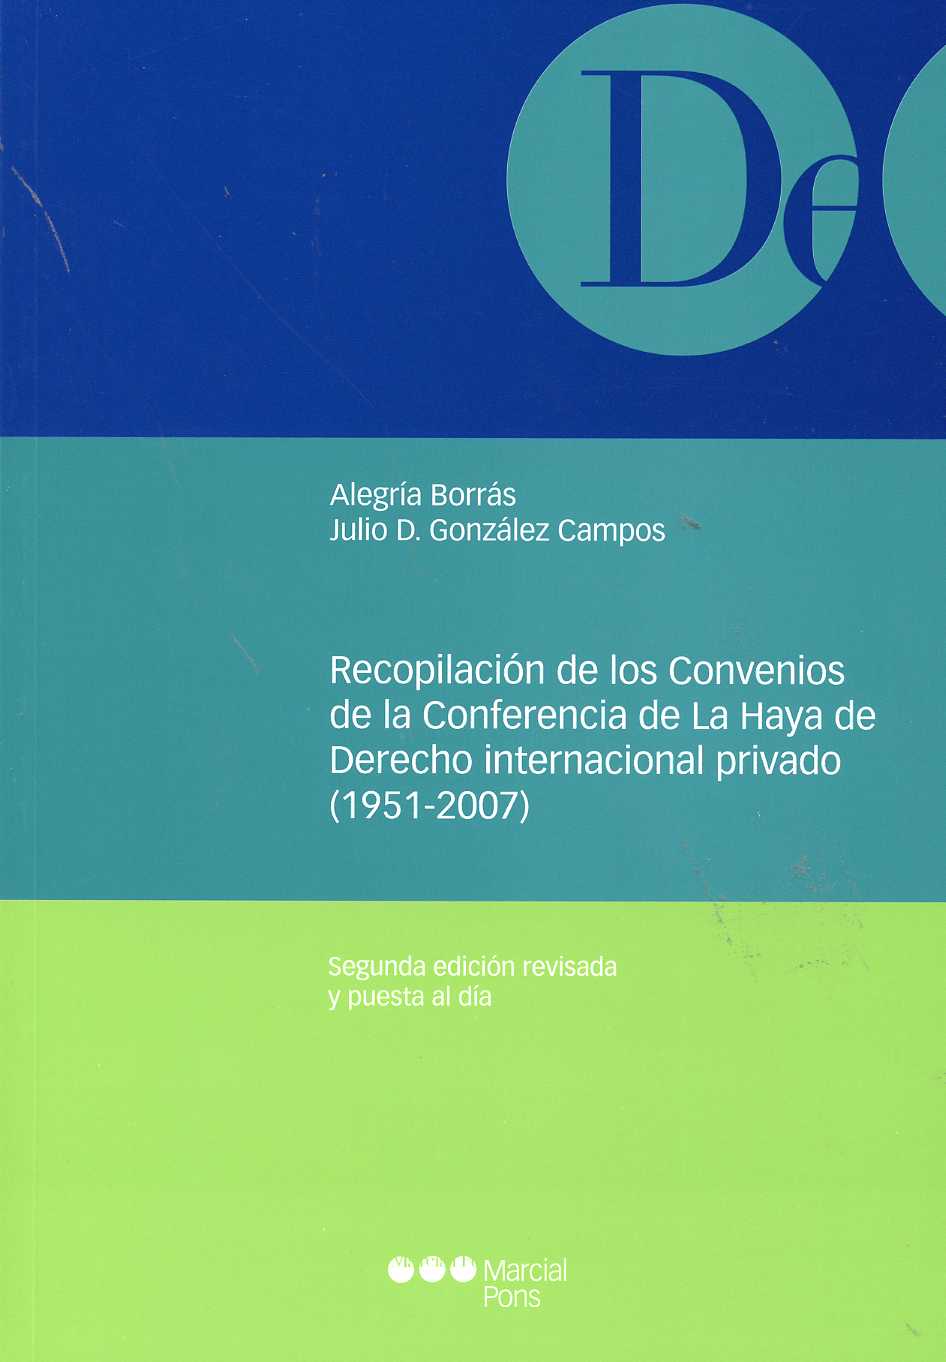 Recopilación de los Convenios de la Conferencia de la Haya de Derecho Internacional Privado. (1951-2007).-0